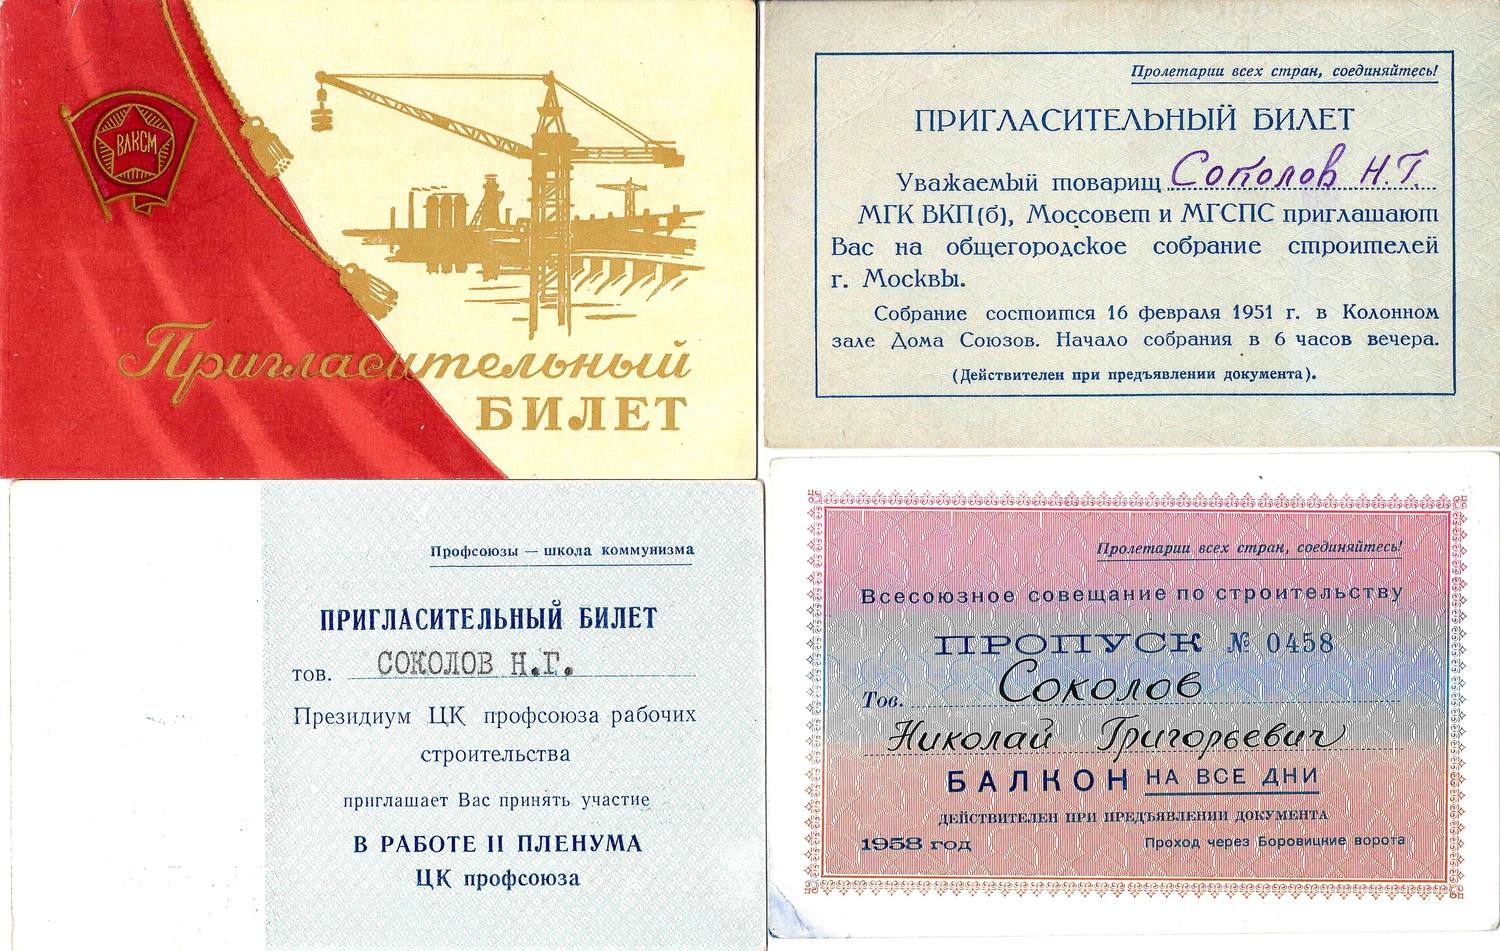 5 пригласительных билетов и пропусков на проходившие в Москве мероприятия строительной отрасли на имя Николая Григорьевича Соколова. 1951 - 1958 годы.